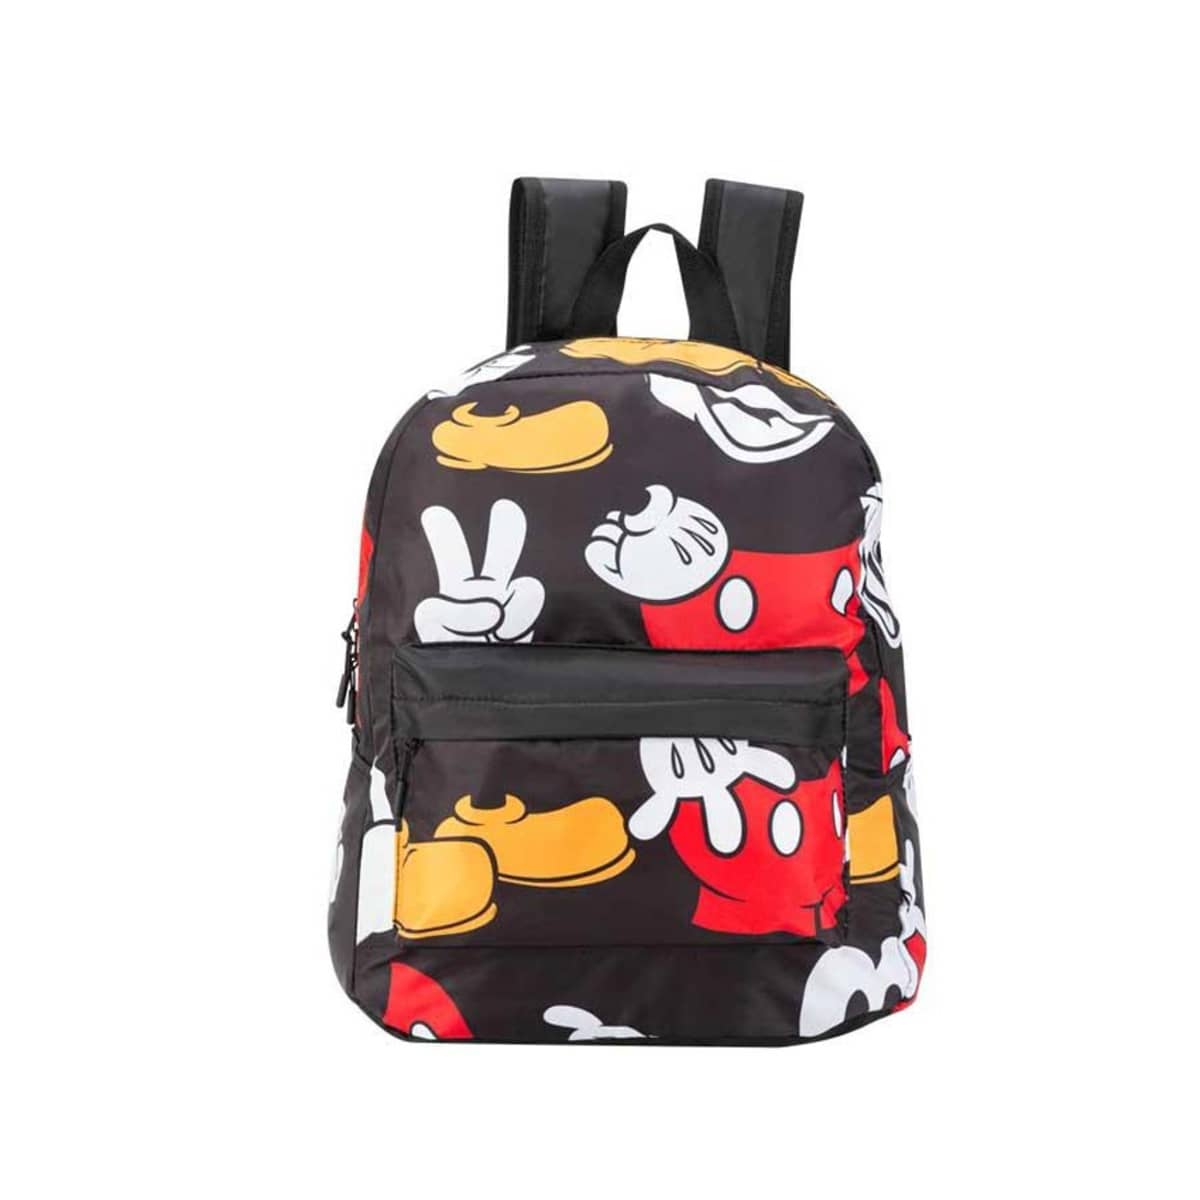 Mochila backpack para mujer de Mickey Mouse de Disney, color negro con  blanco, rojo y amarillo, mod. 1098733